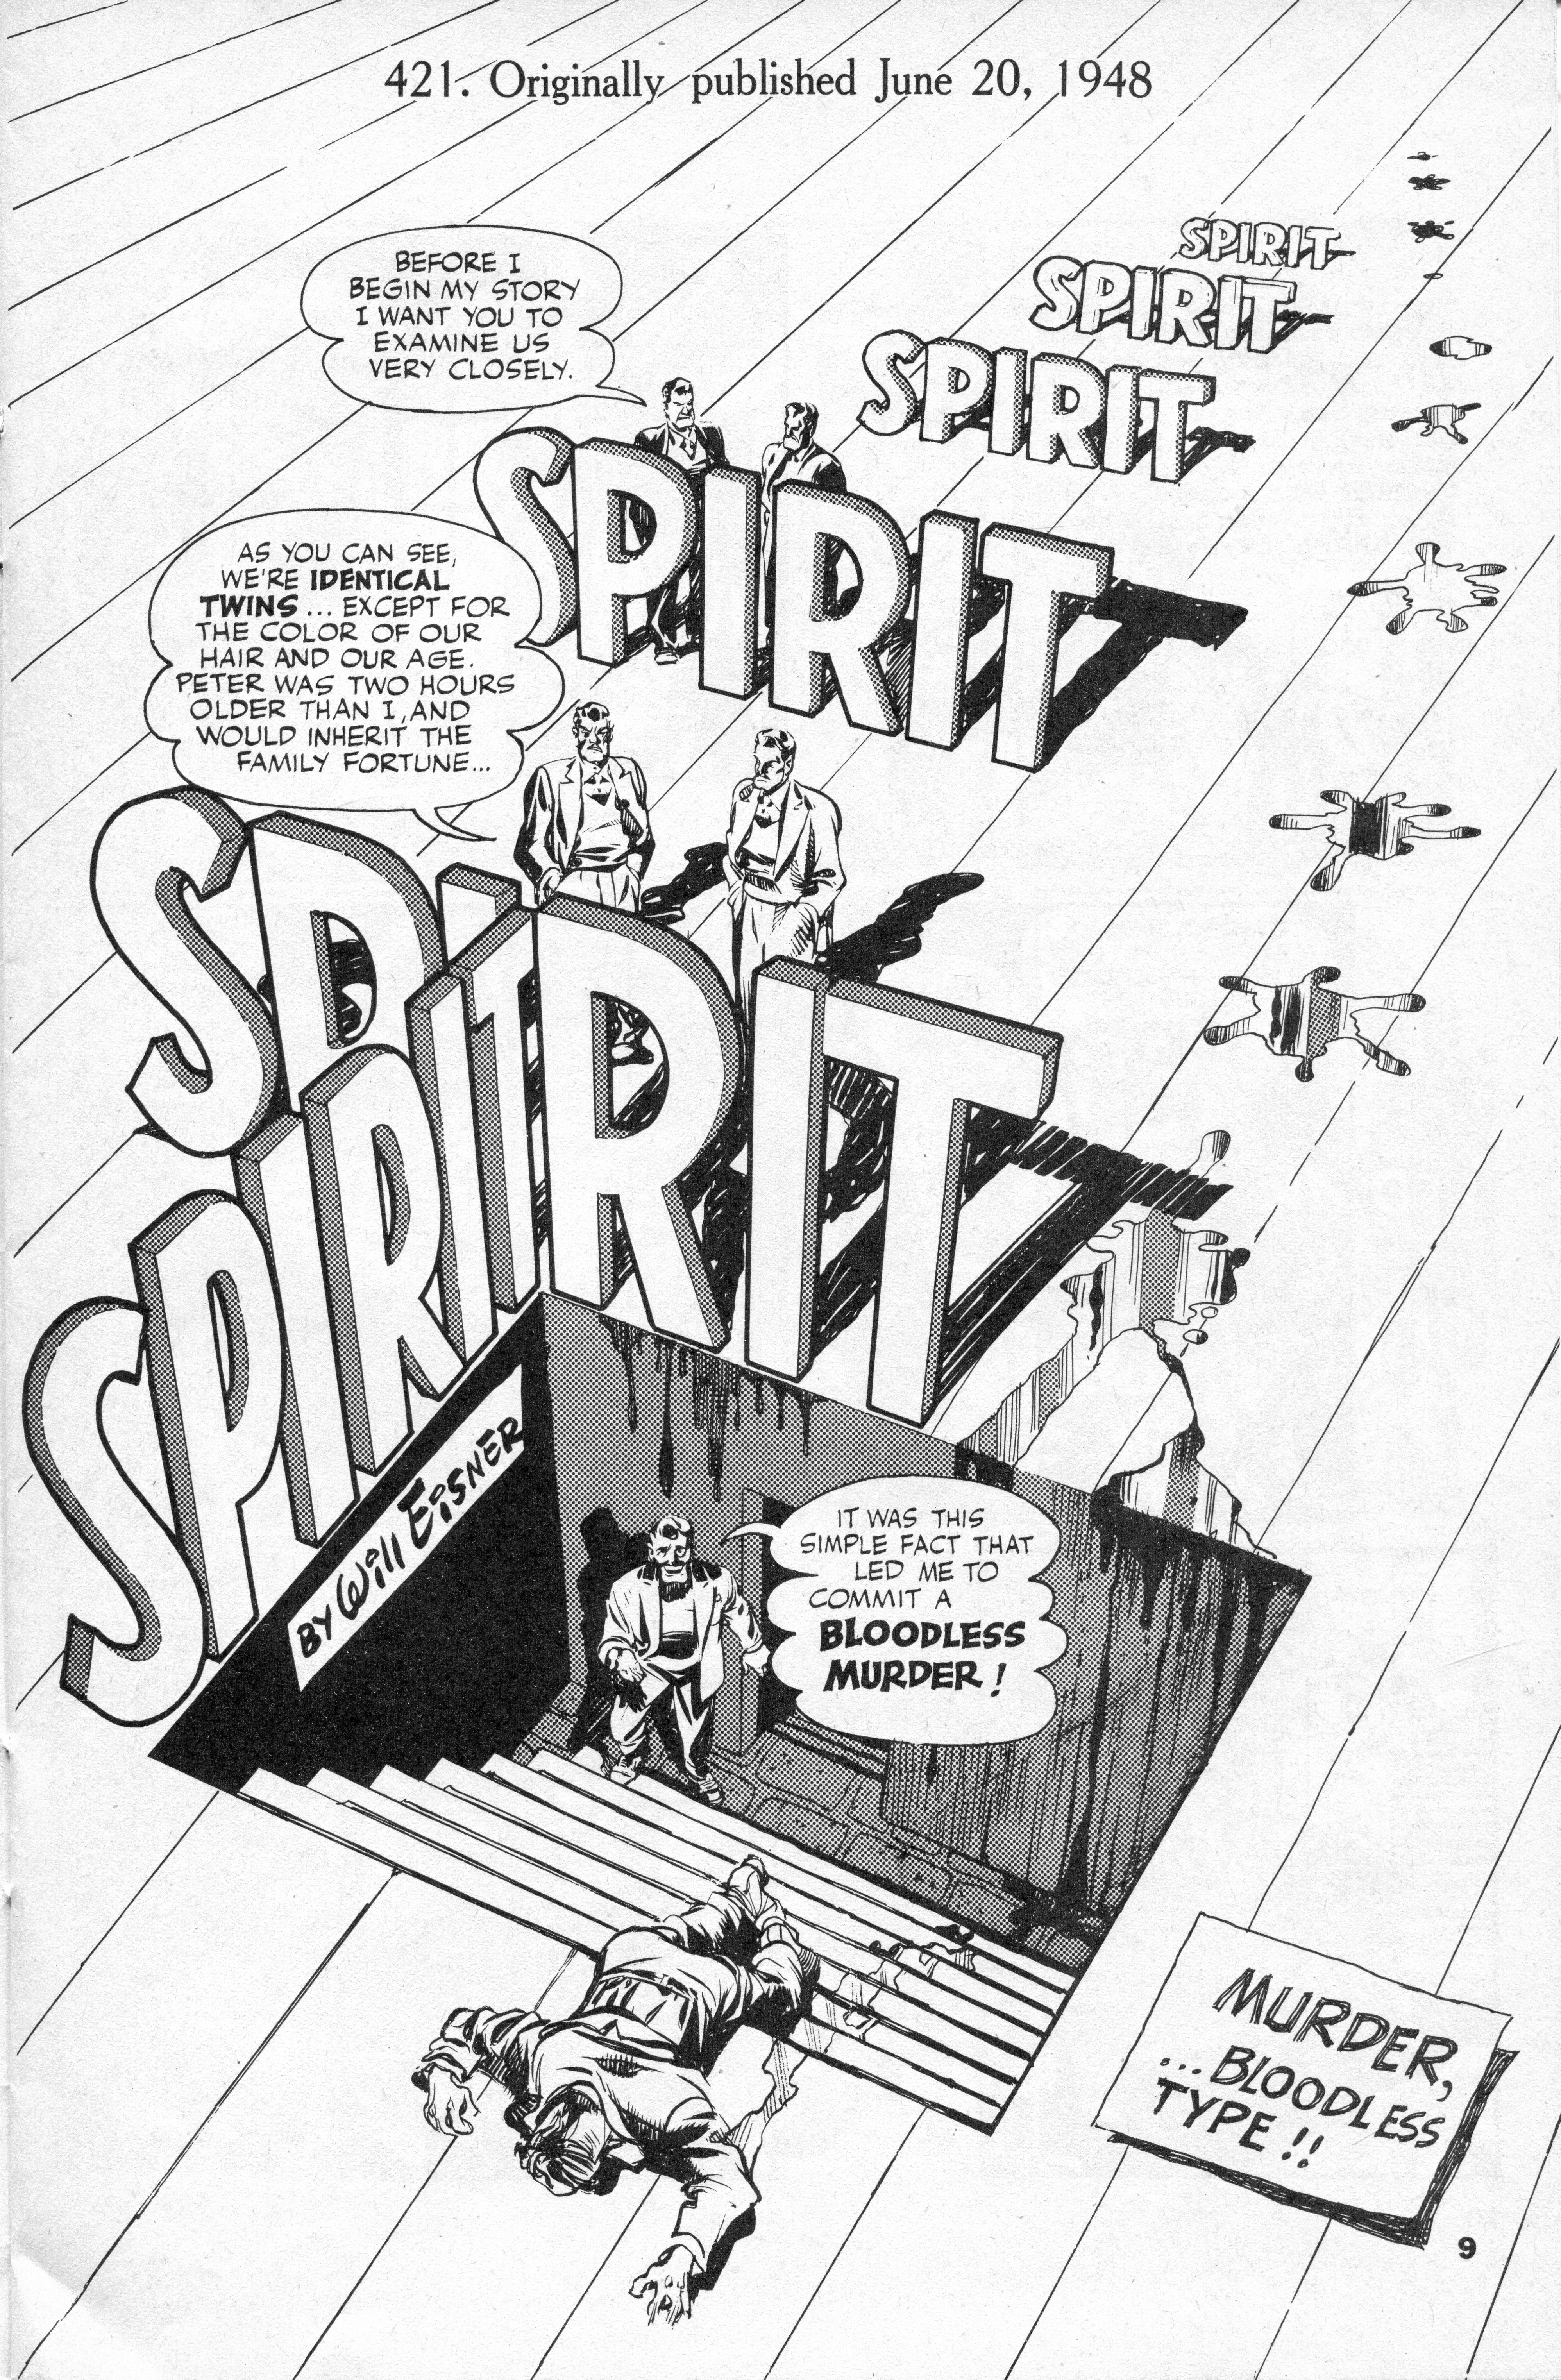 Will Eisner, The Spirit 20.06.1948 frontespizio dellla ristampa in bianco e nero degli anni Sessanta